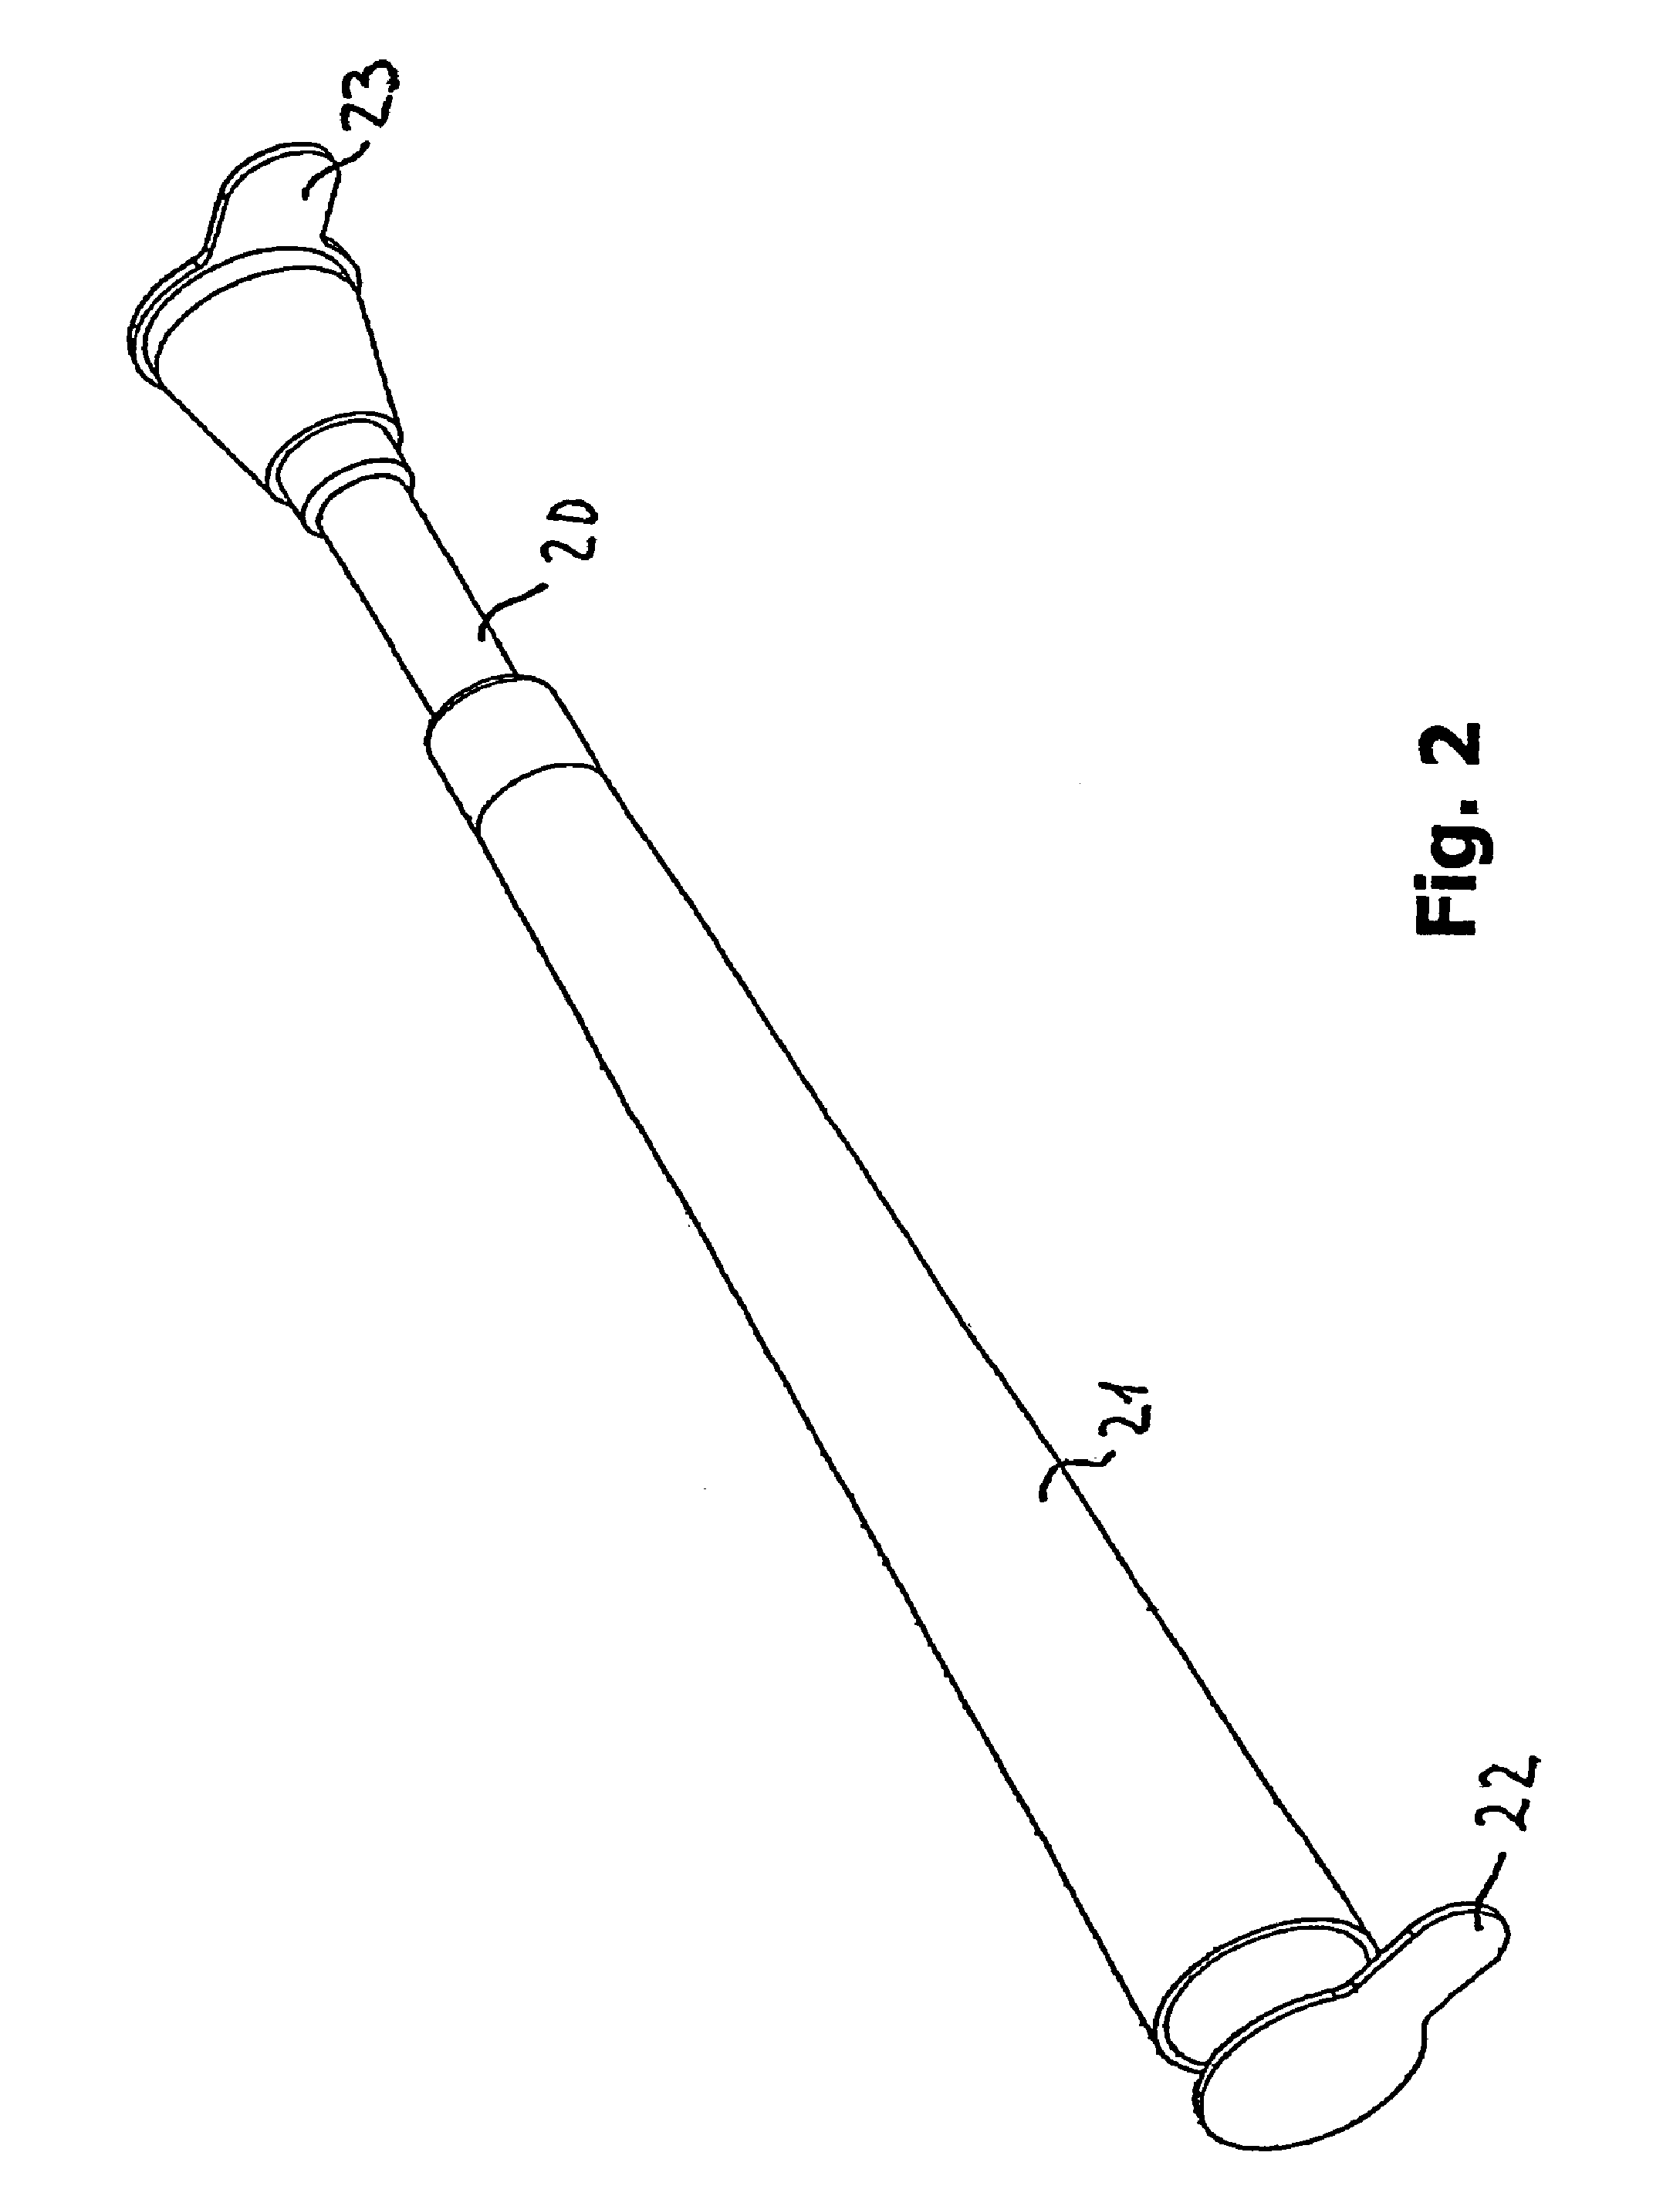 Catheter device